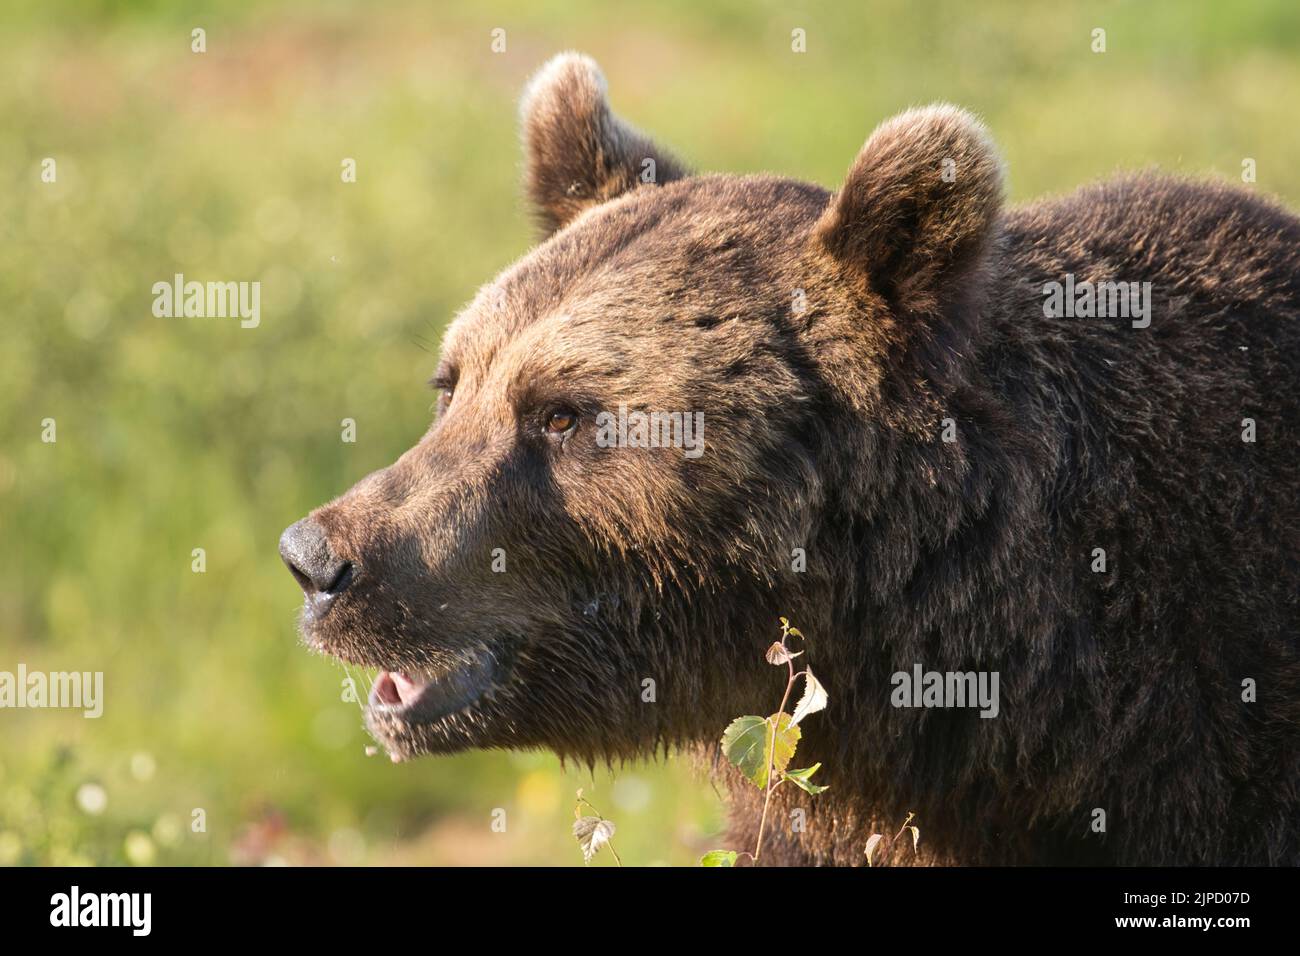 Braunbär (Ursus arctos) auf einer Lichtung im finnischen Taiga- oder Borealwald Stockfoto